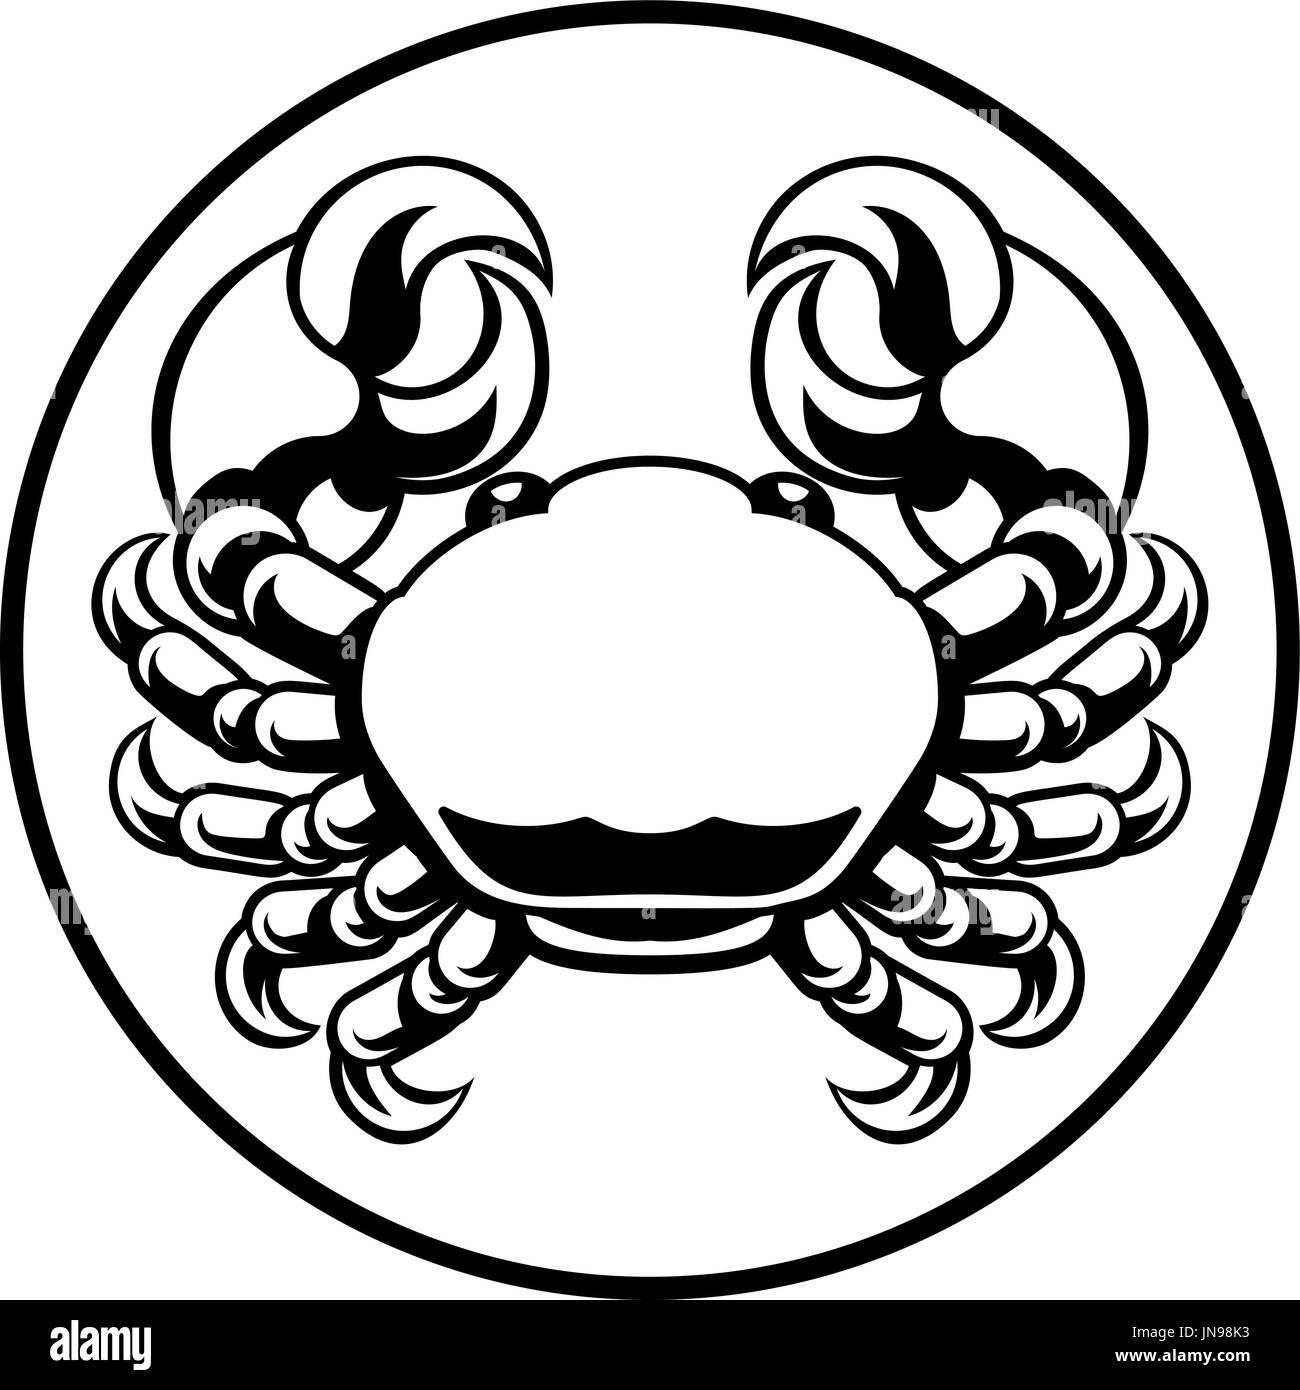 Crab Cancer Zodiac Horoscope Sign Stock Vector